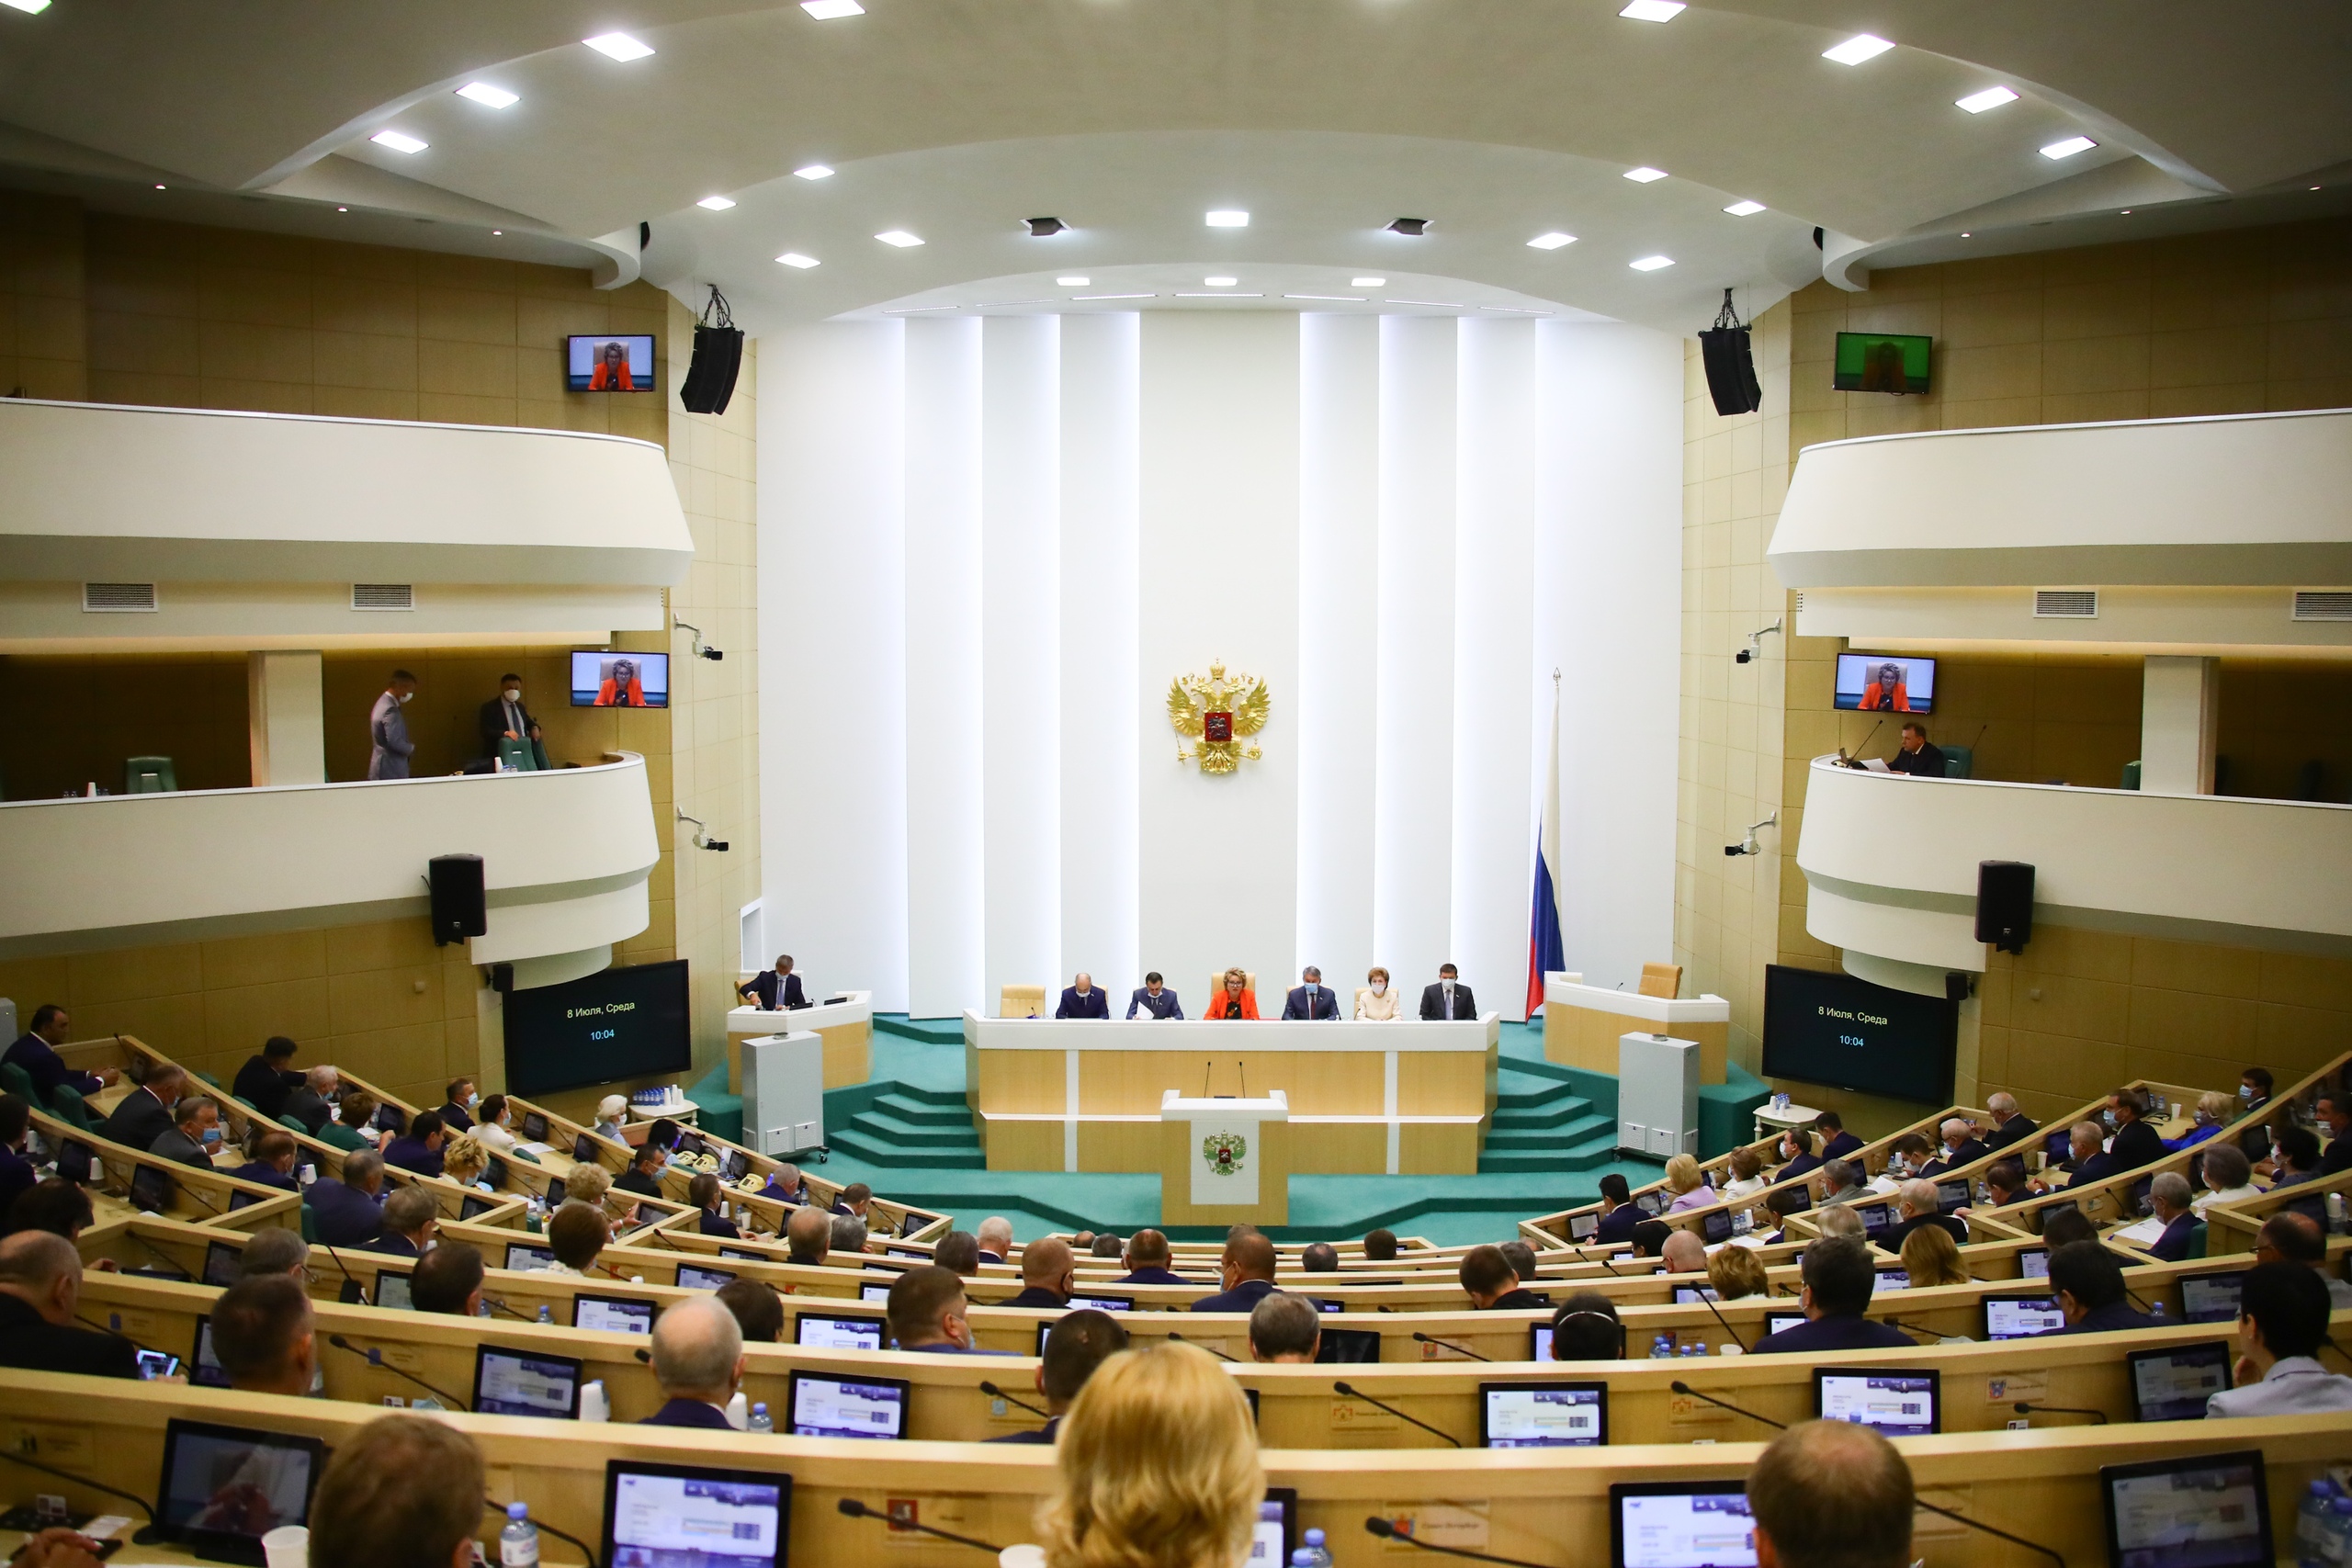 Калужское представительство в Совете Федерации обновится в сентябре 2020 года.